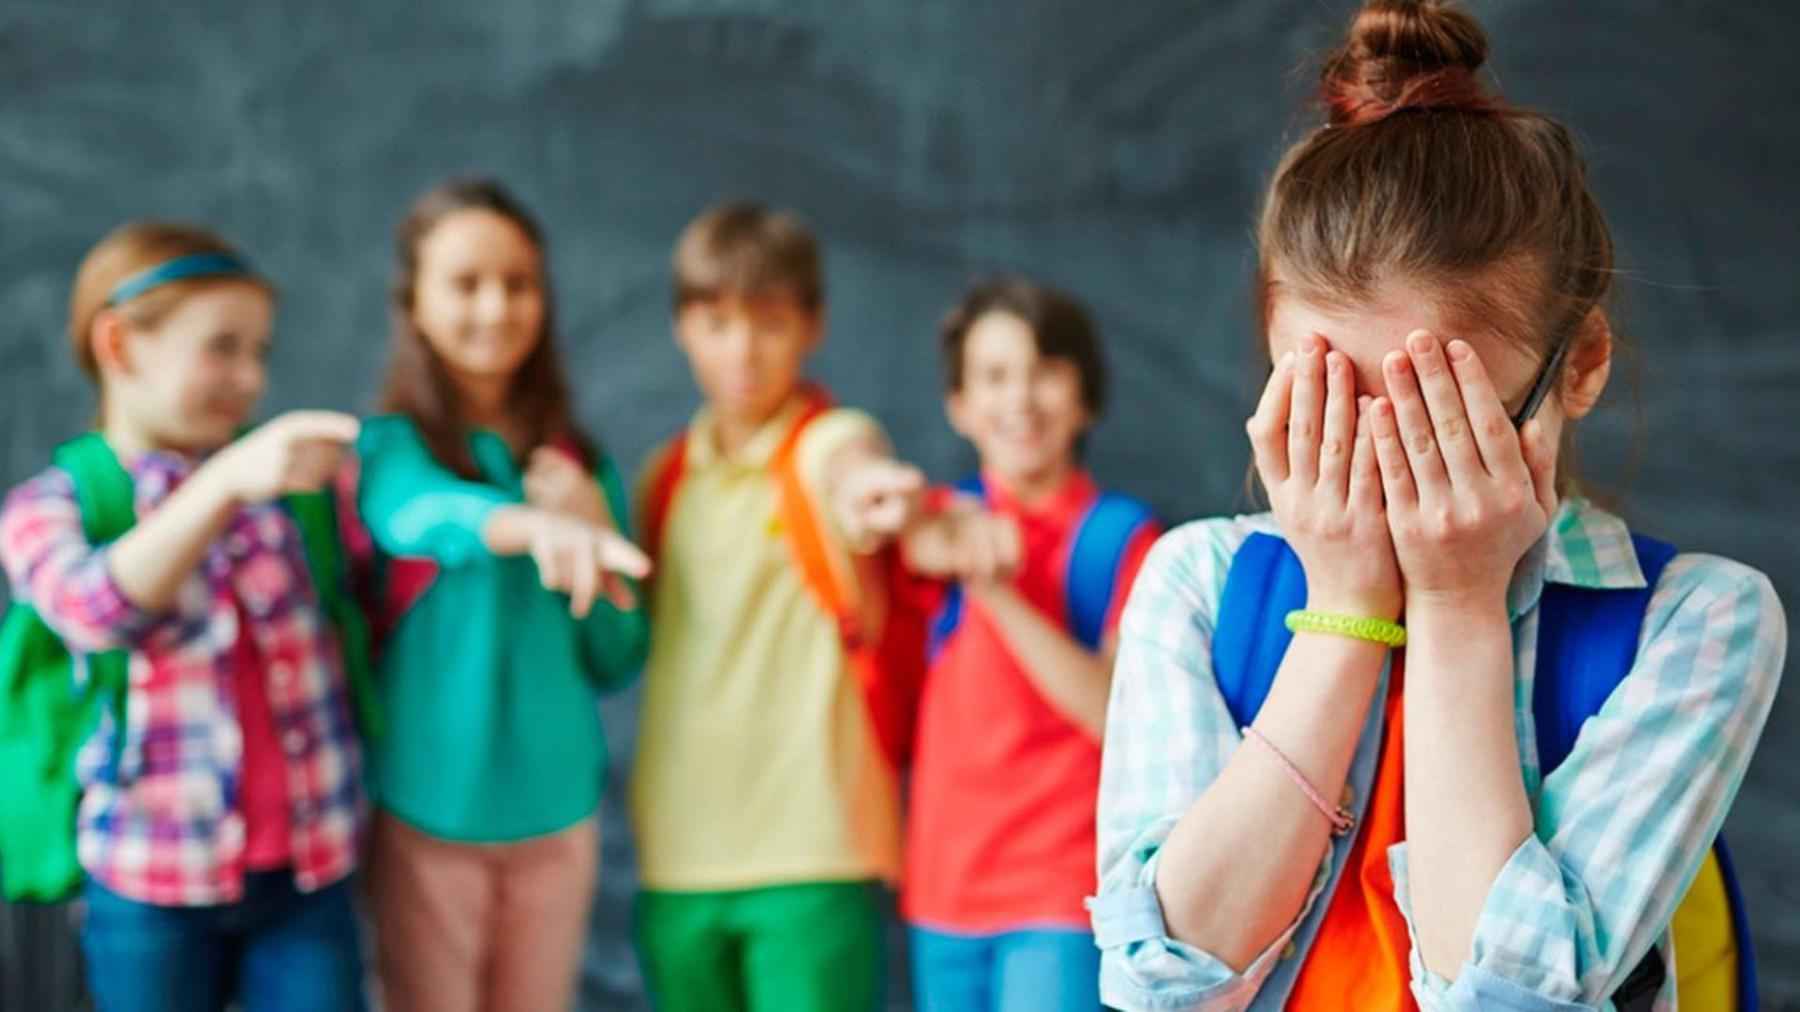 Bullying  adotivo, já ouviu falar nessa modalidade de ataque nas escolas?